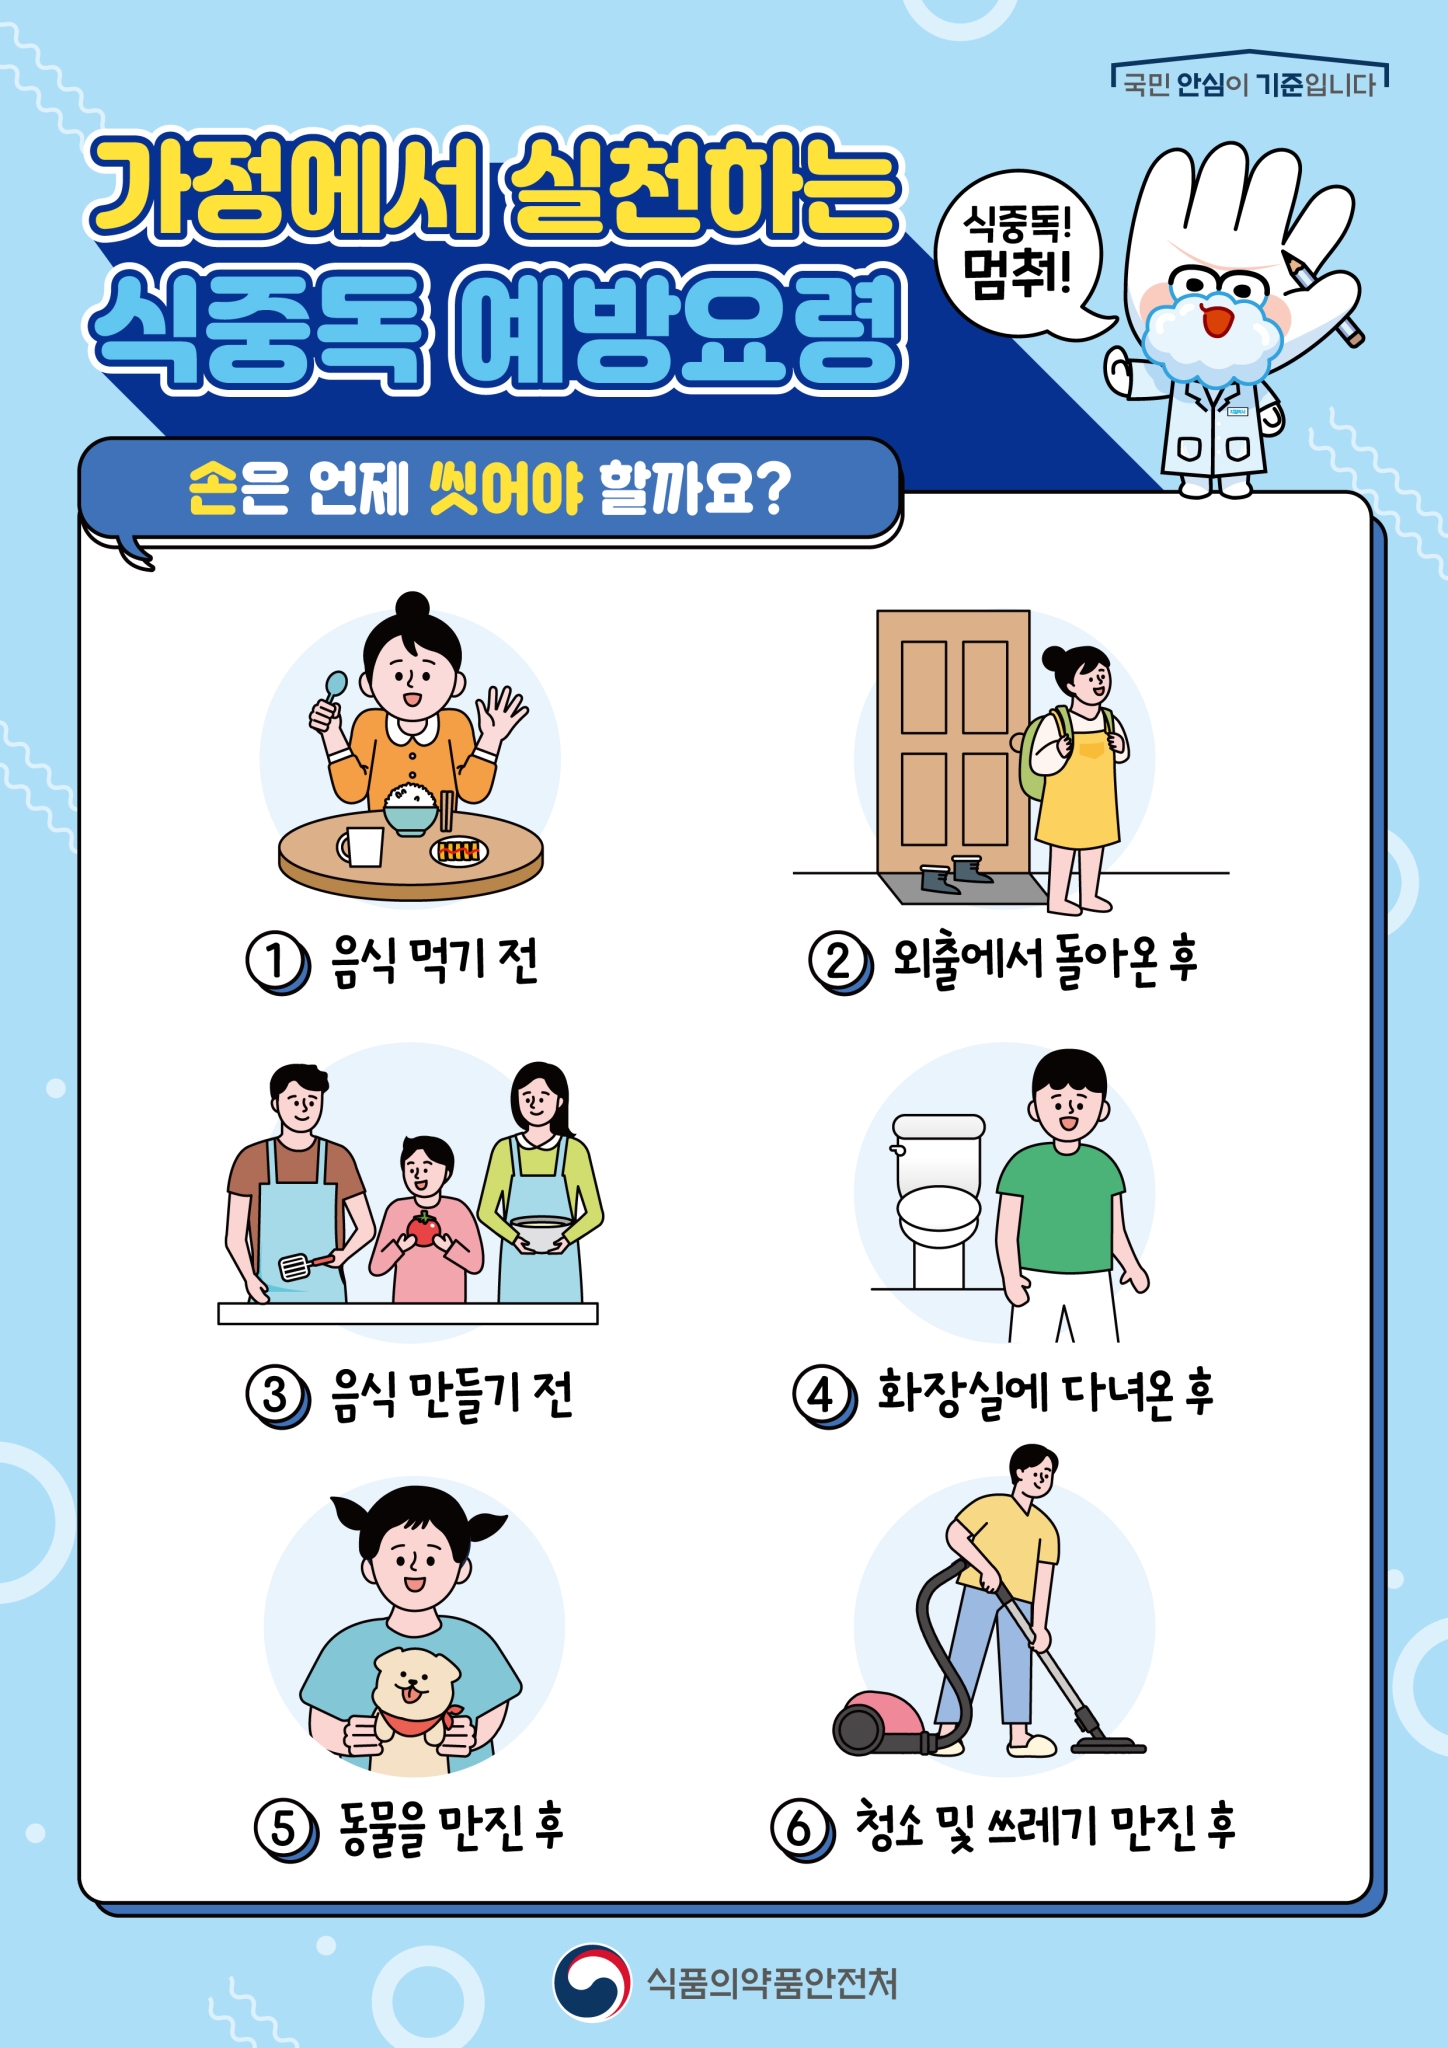 전라북도교육청 문예체건강과_가정에서 실천하는 식중독 예방요령(가정통신문2)